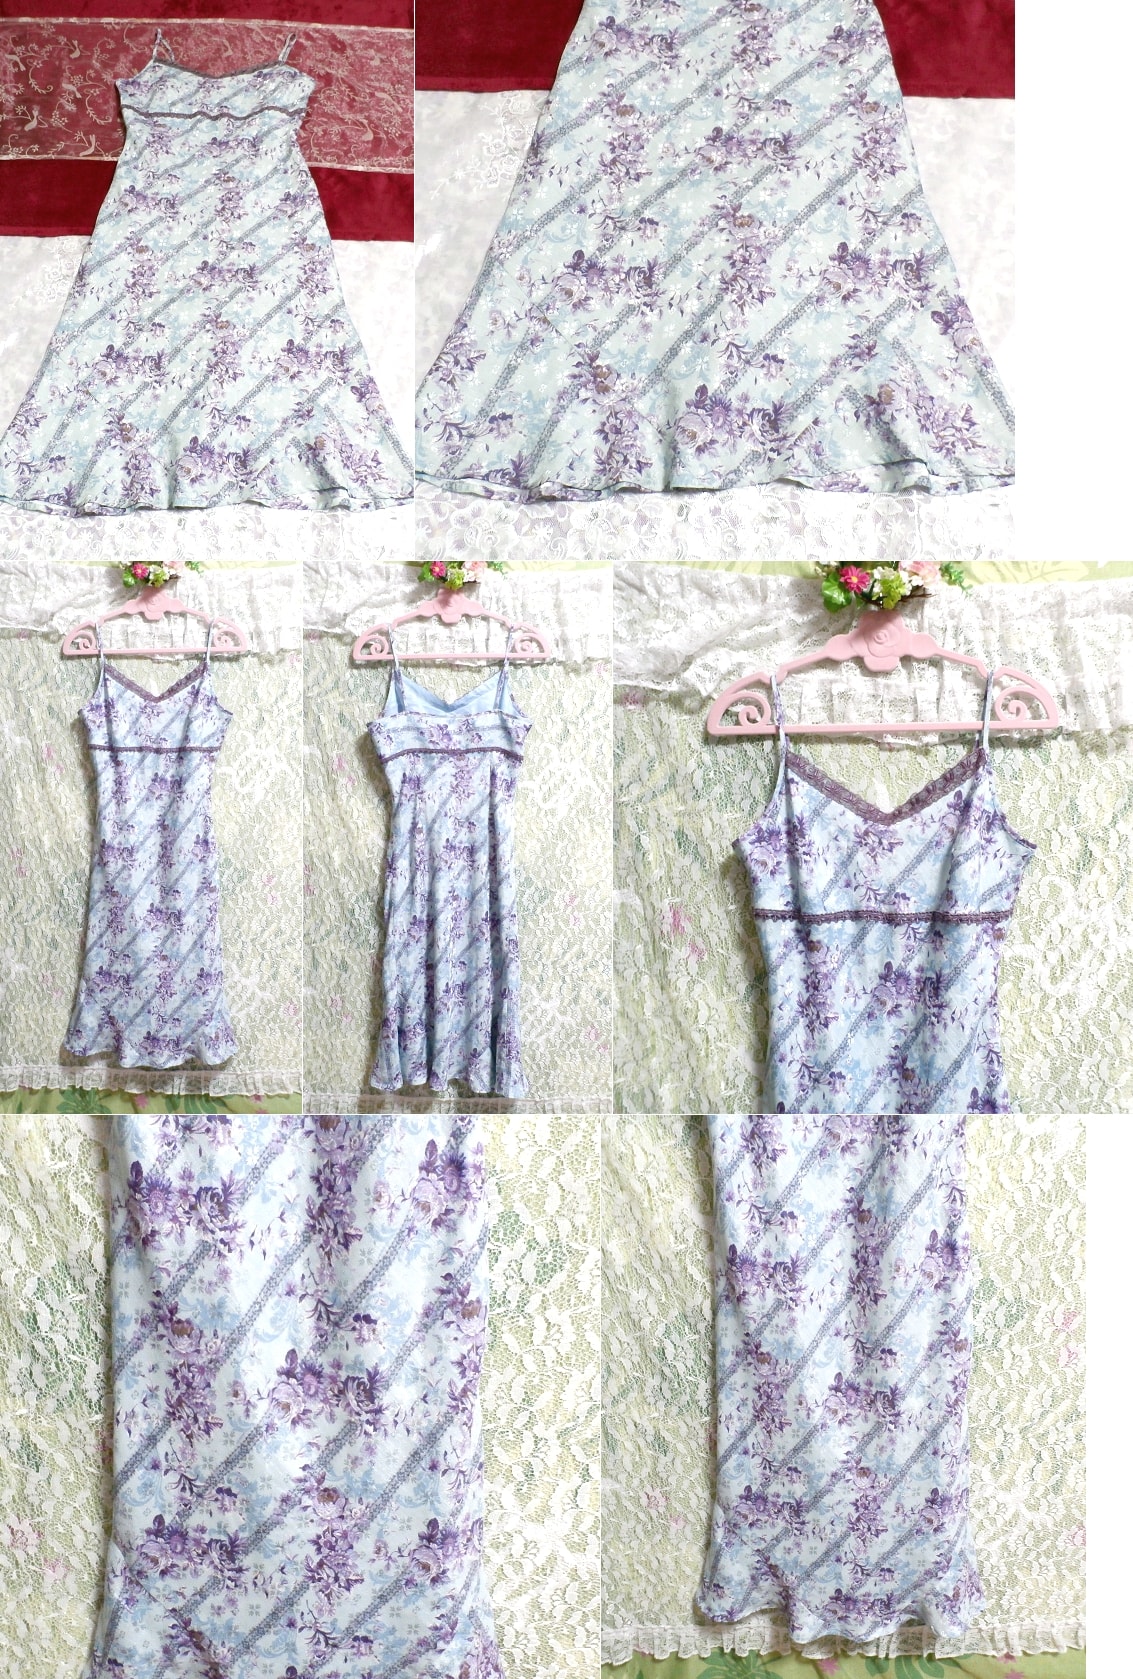 하늘색과 보라색 꽃무늬 네글리제 나이트가운 캐미솔 드레스 스커트, 무릎길이 스커트, m 사이즈